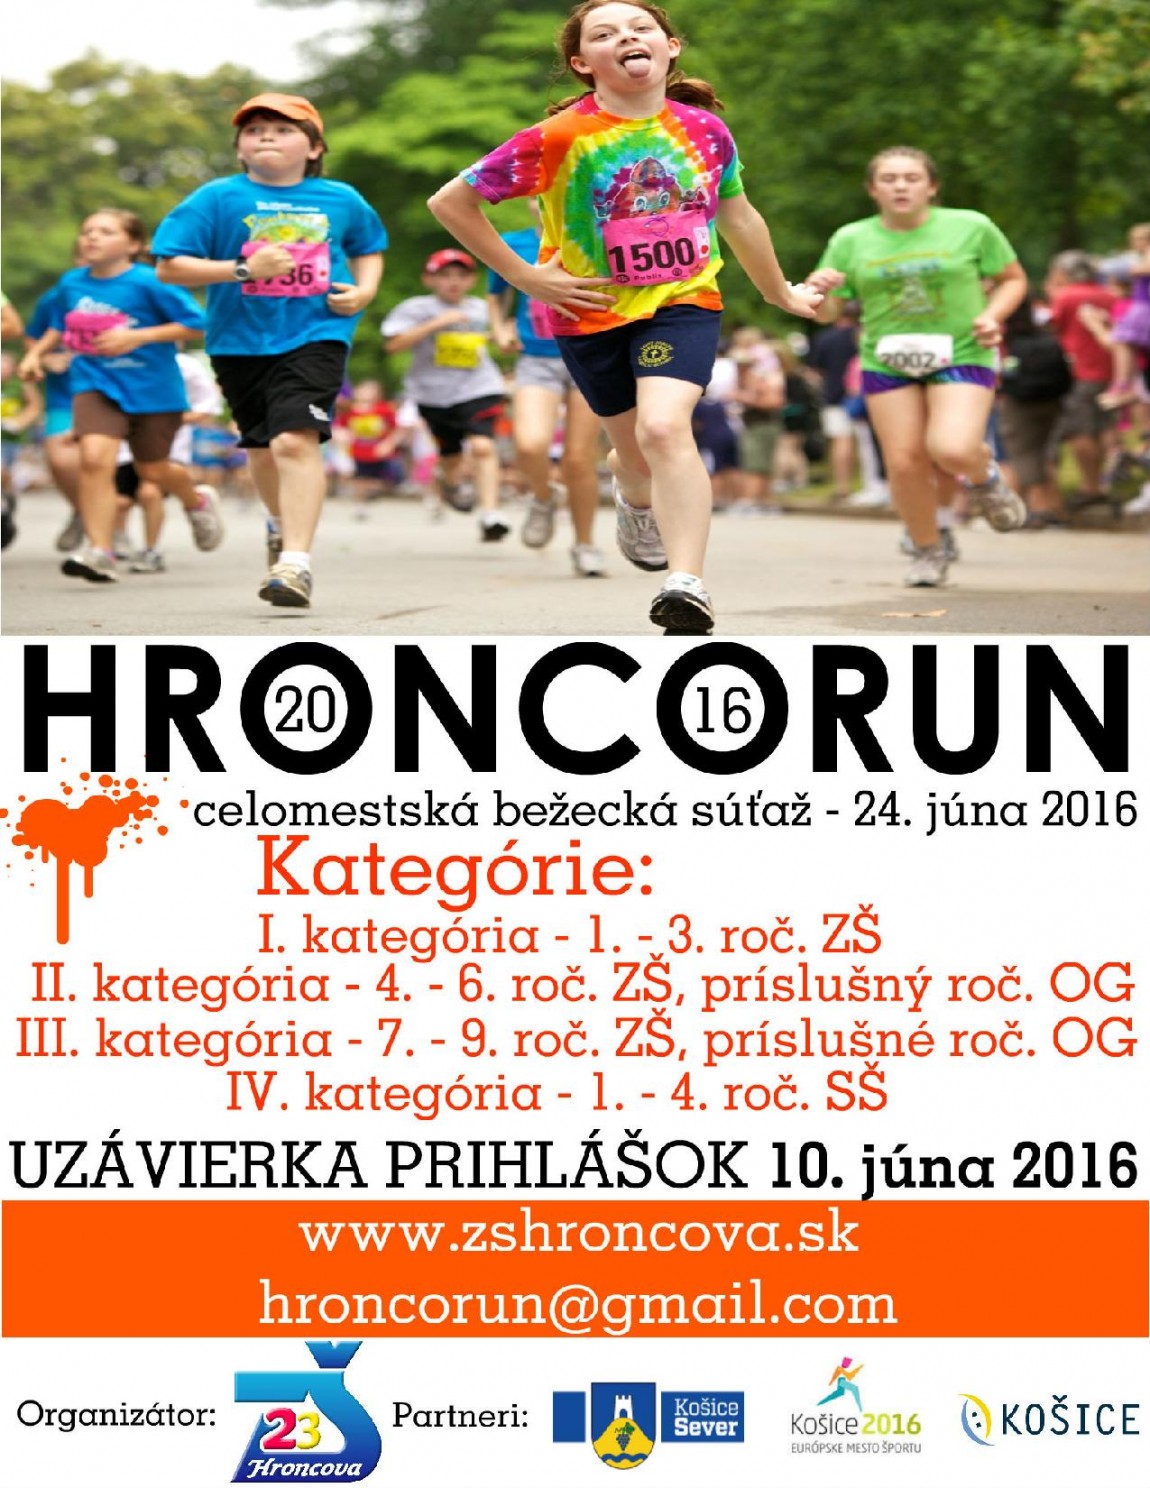 HroncoRun – propozície